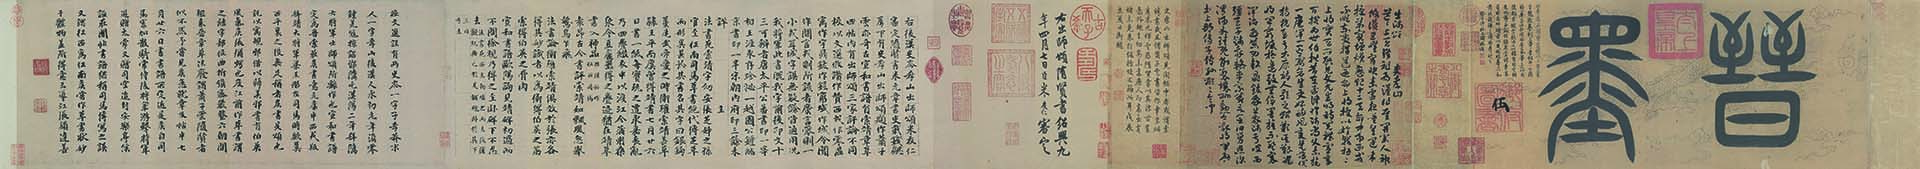 隋 索靖 出师颂章草书(全卷)纸本21.2x127.8北京故宫